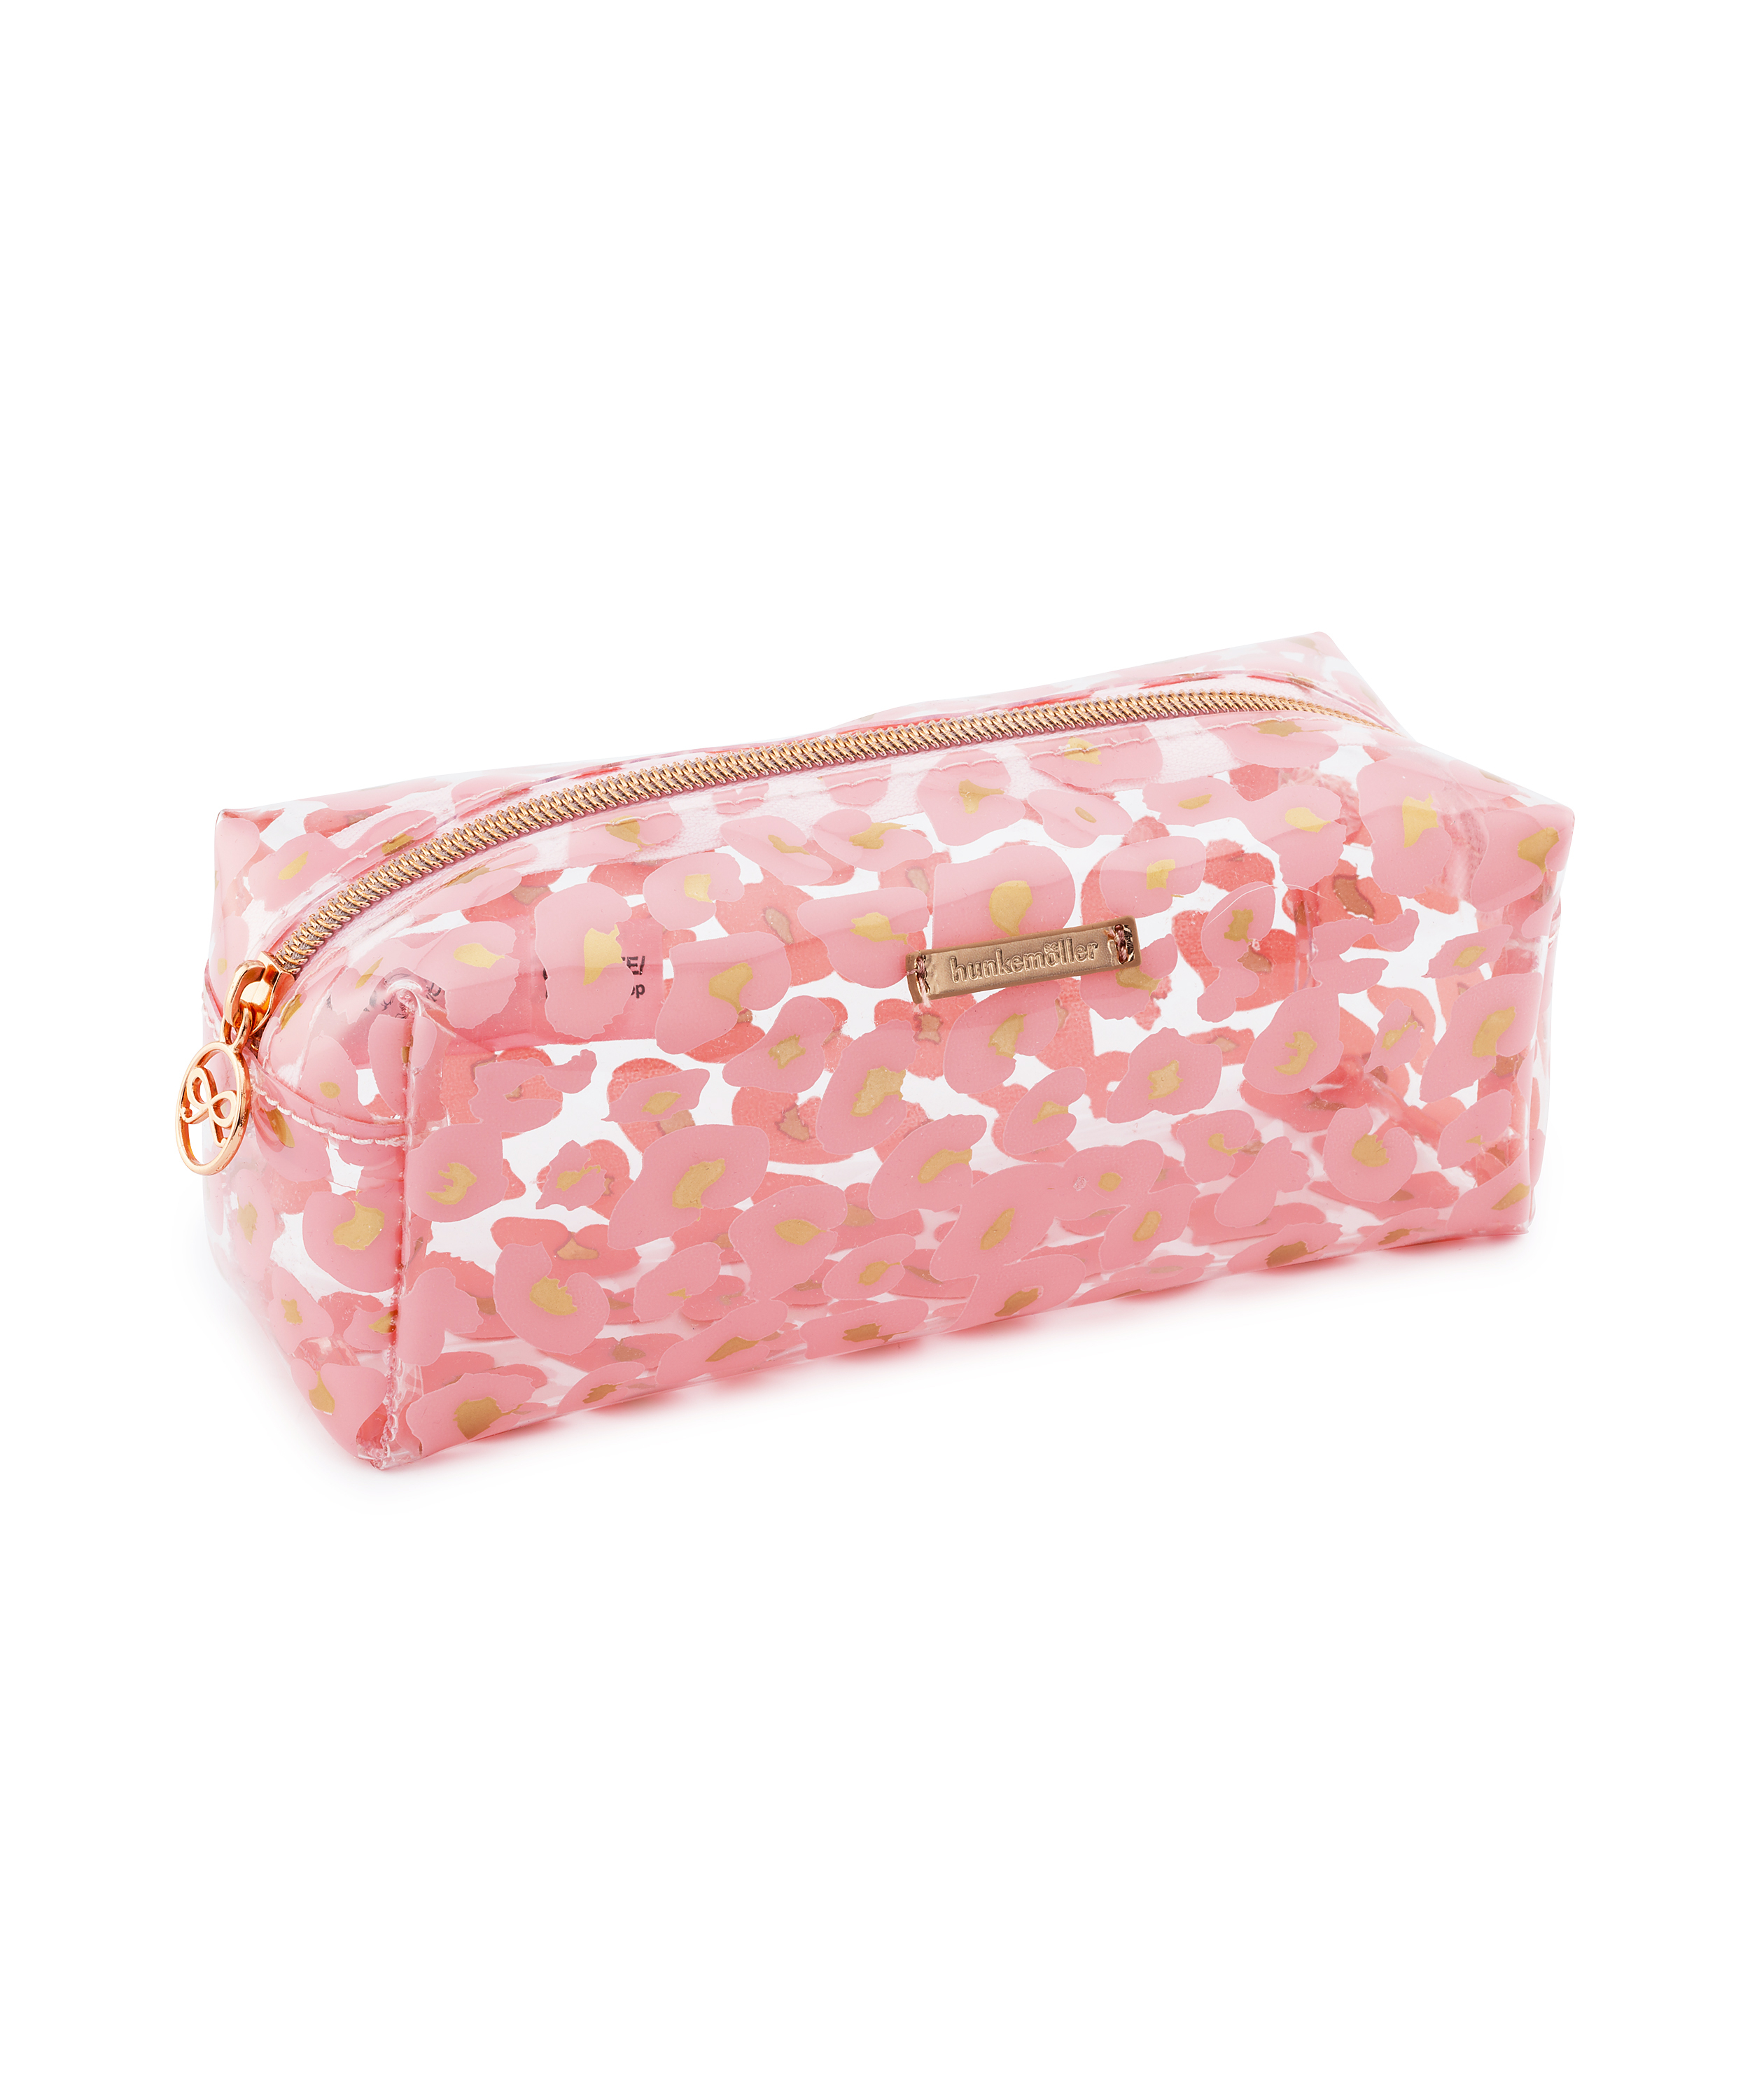 Leopard Make-Up Bag, Pink, main